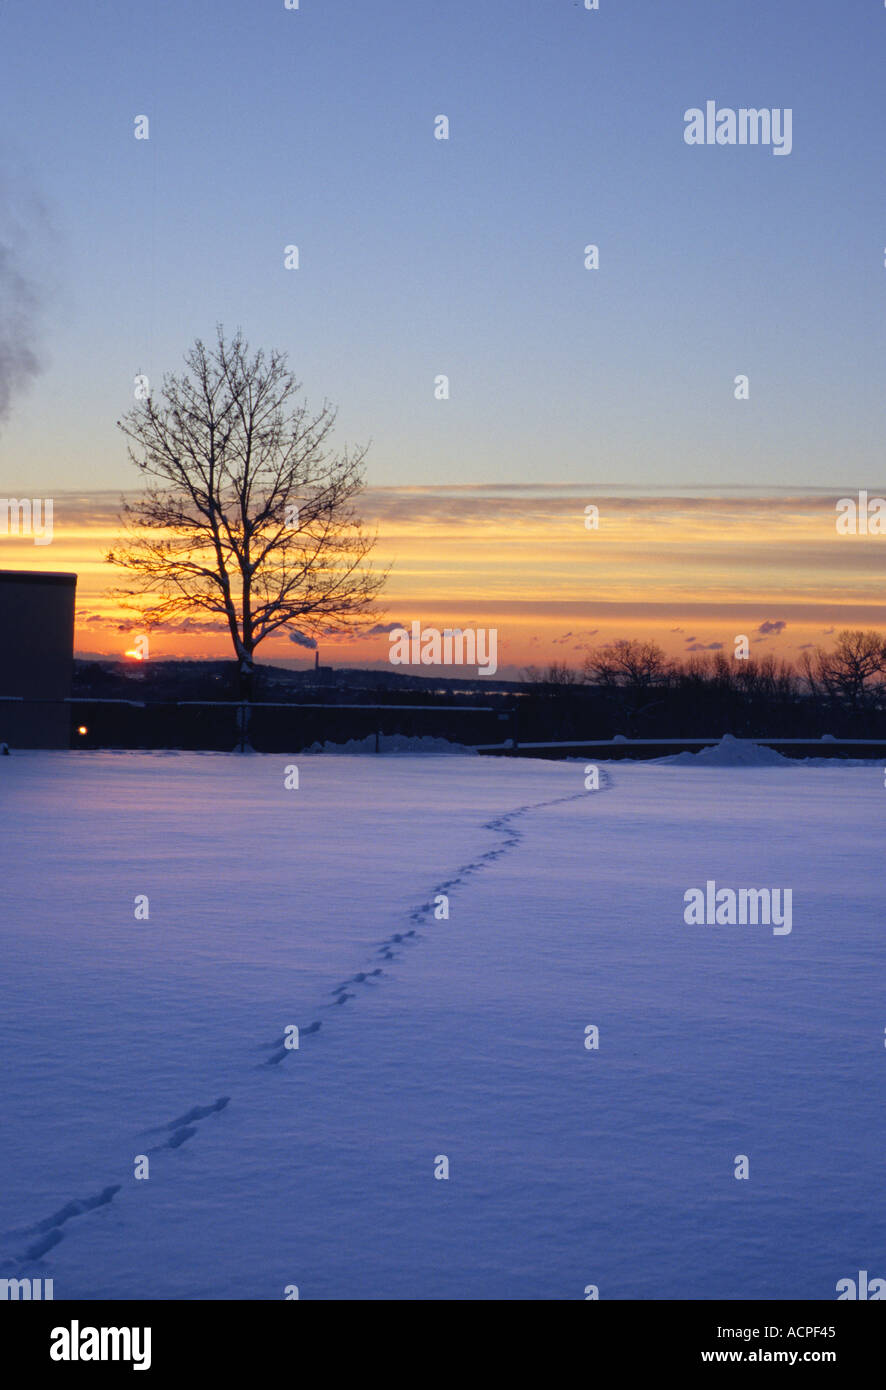 Orme nella neve attraverso un campo nevoso con struttura ad albero e tramonto a distanza Foto Stock